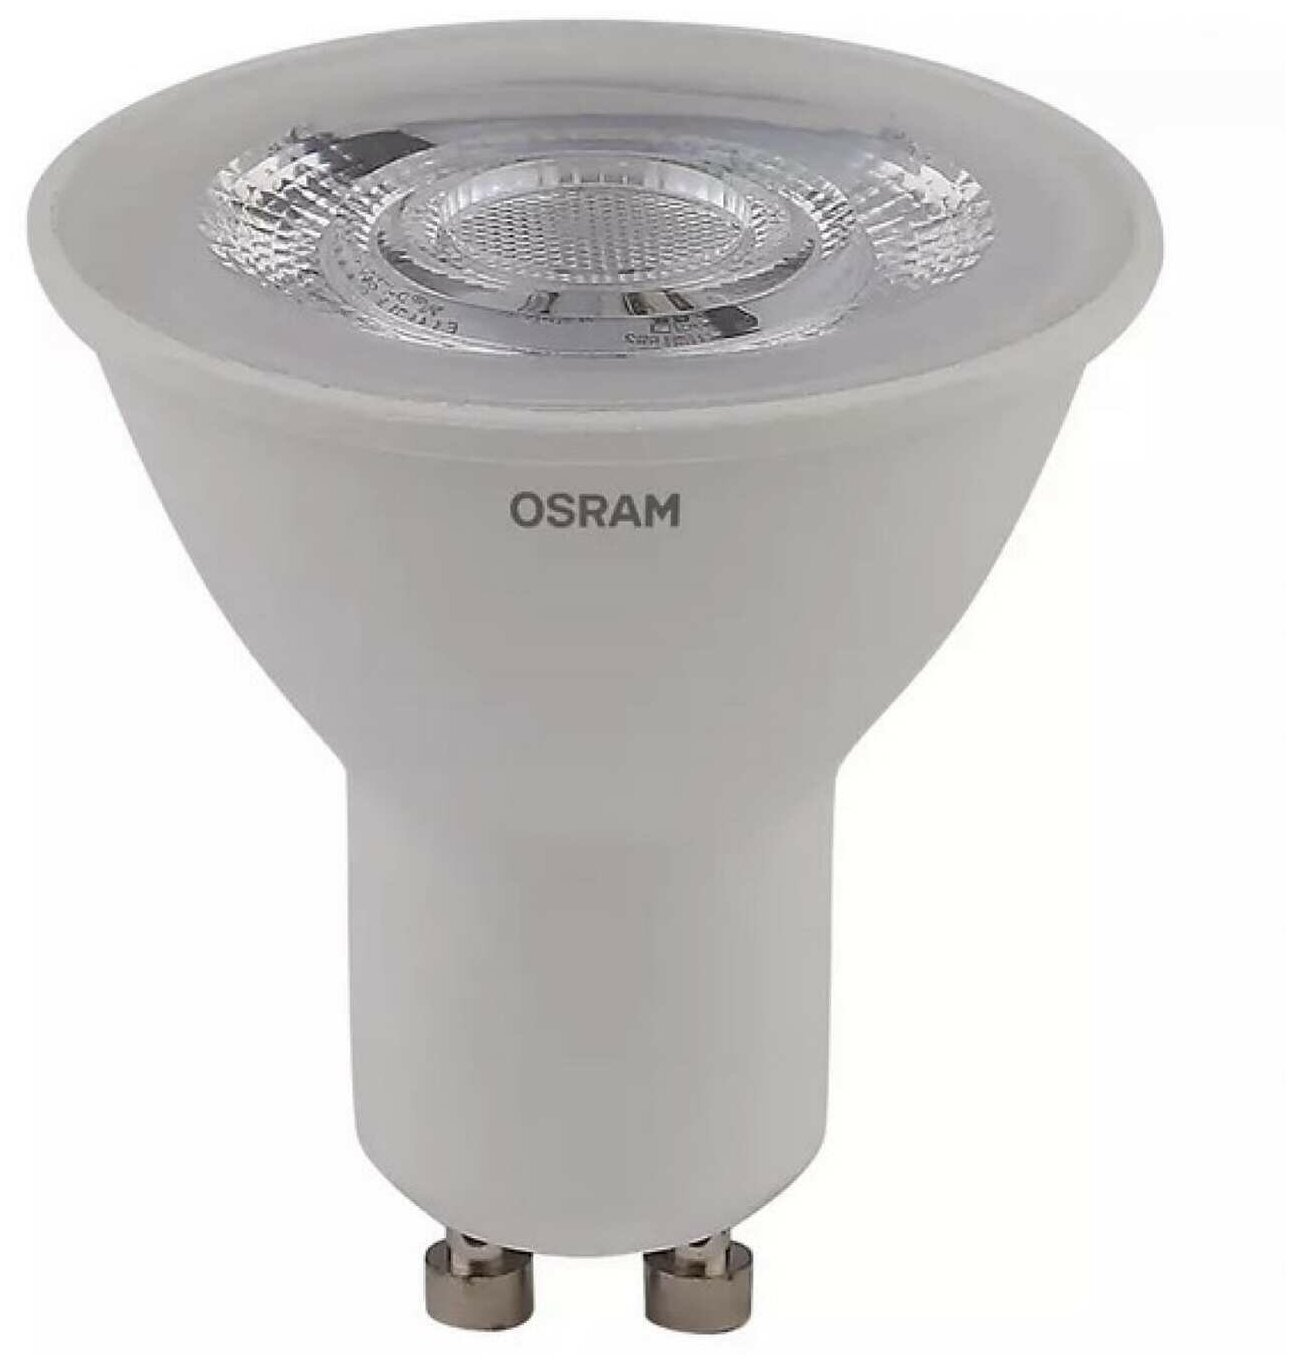 Лампа светодиодная Osram GU10 5 Вт спот прозрачная 370 лм нейтральный белый свет - фото №1